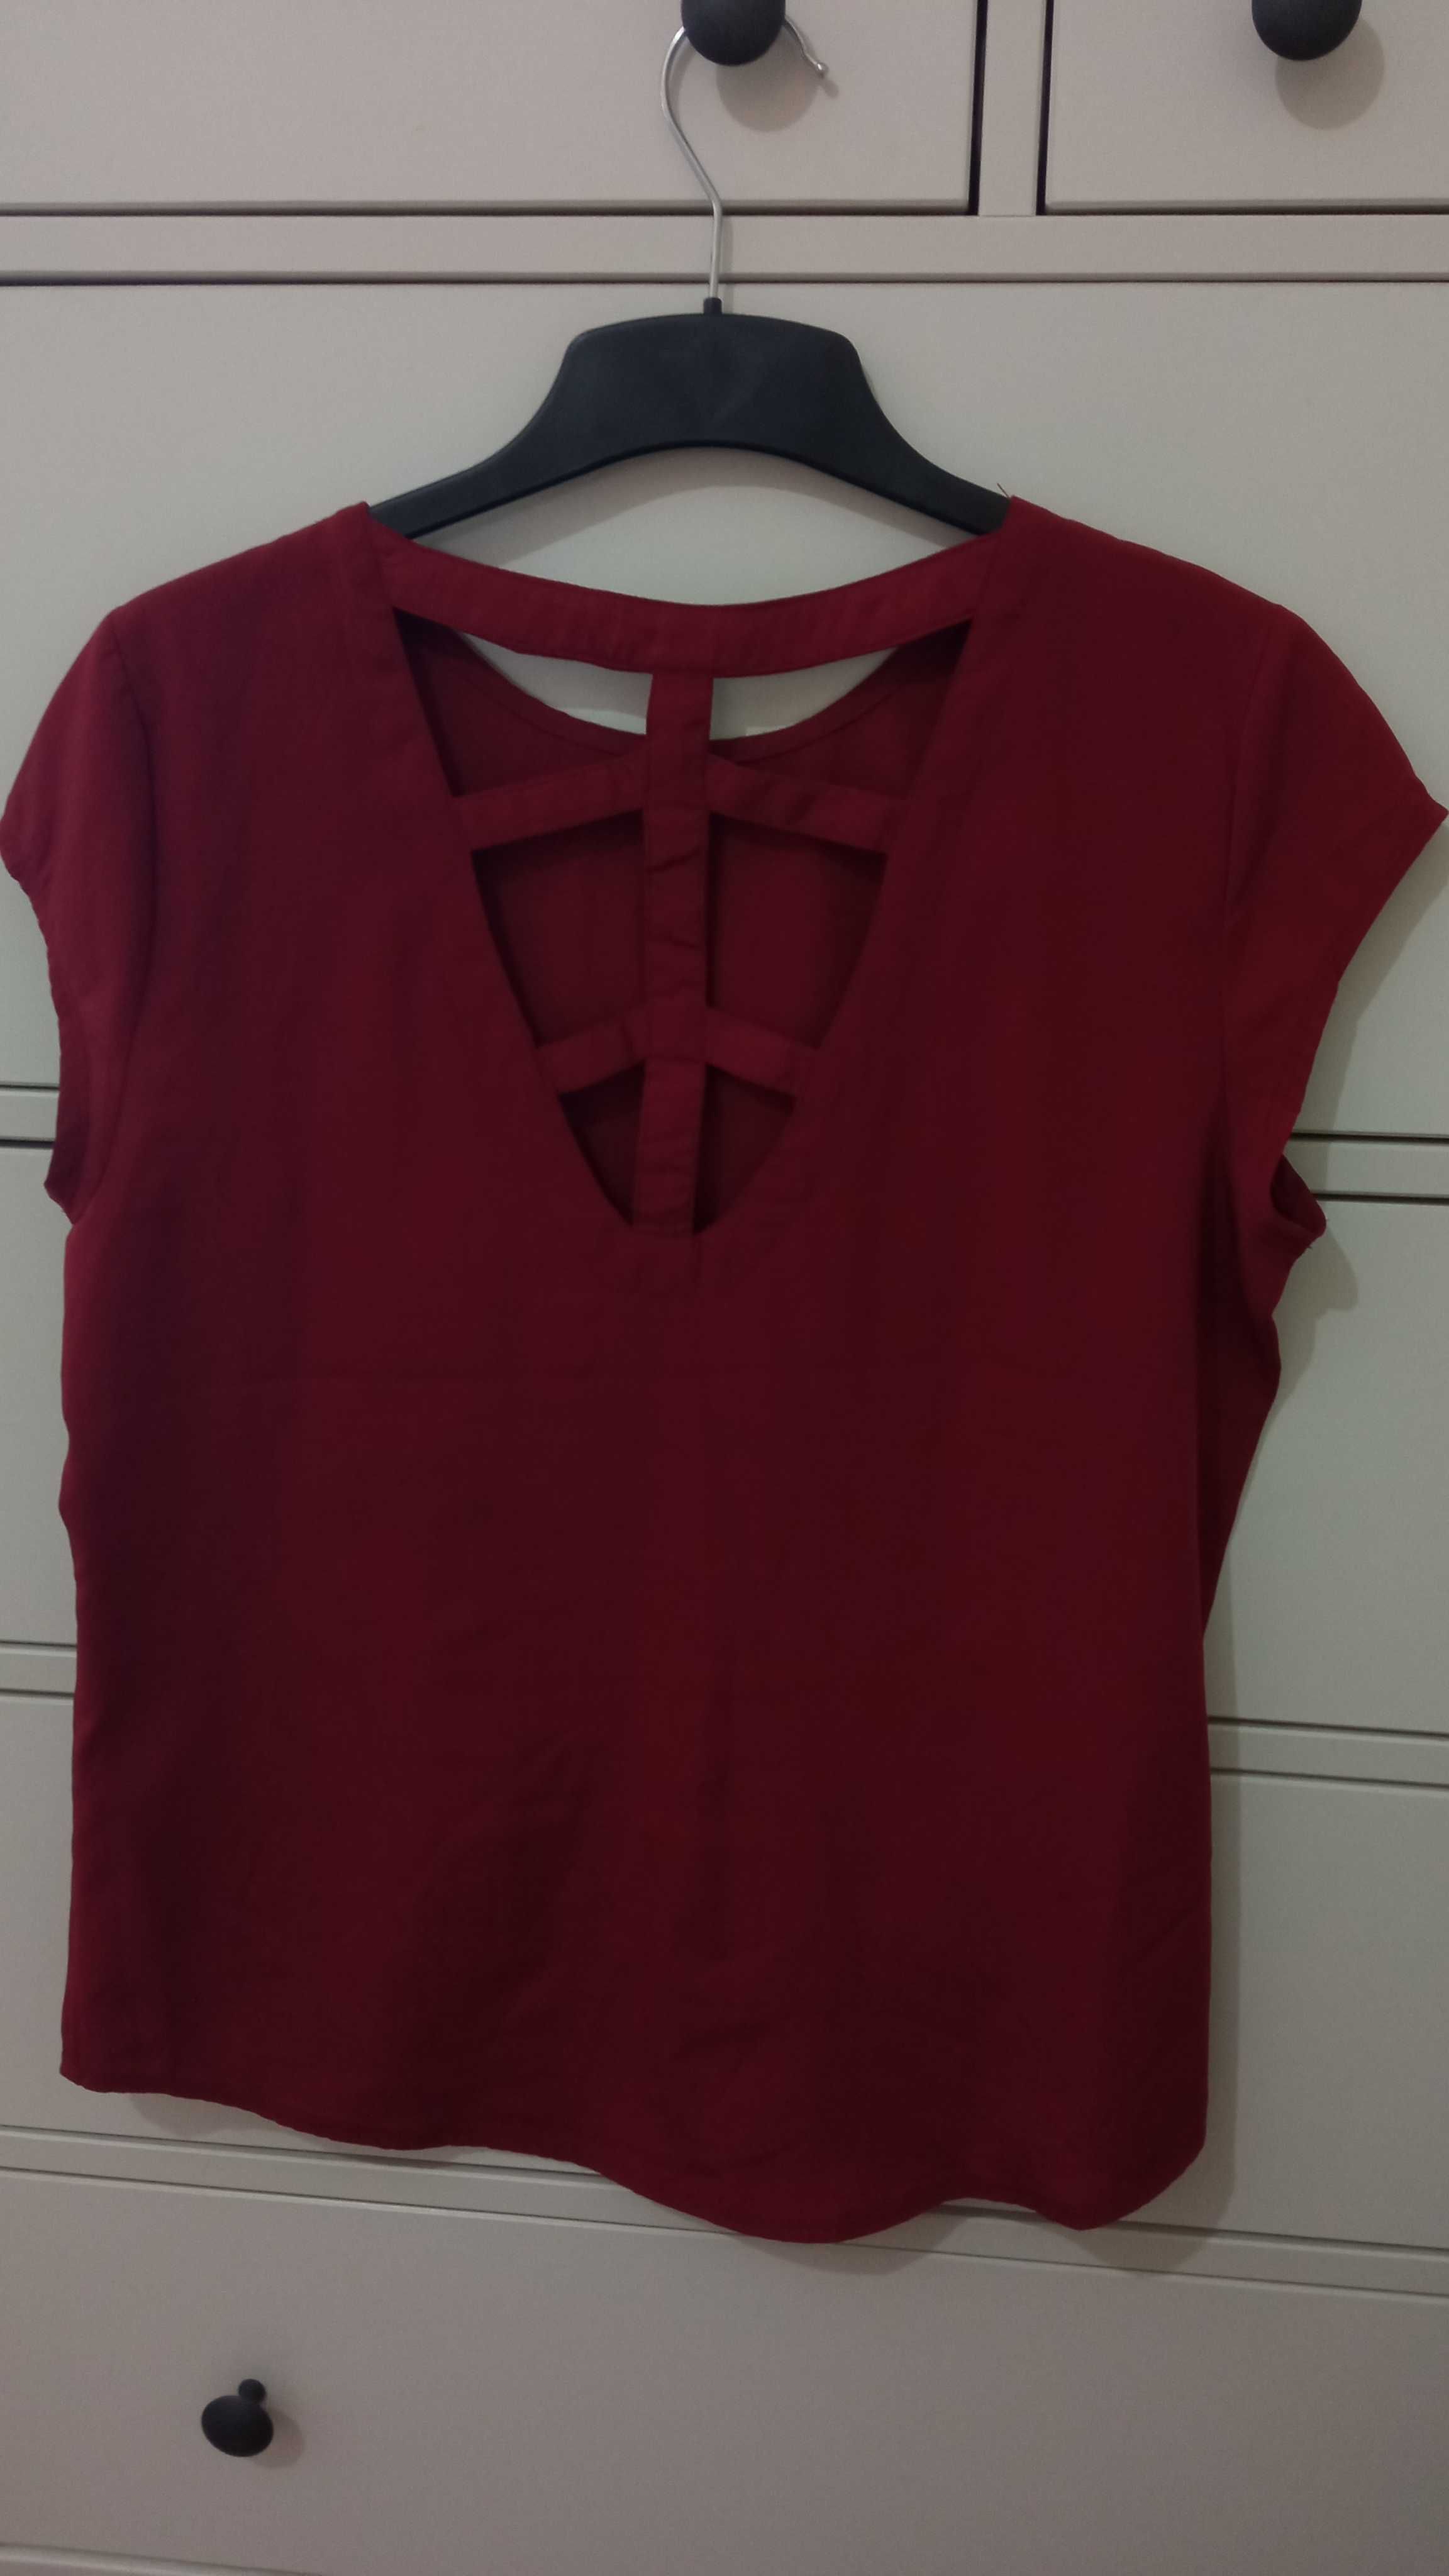 Blusa vermelha da Tiffosi para vender